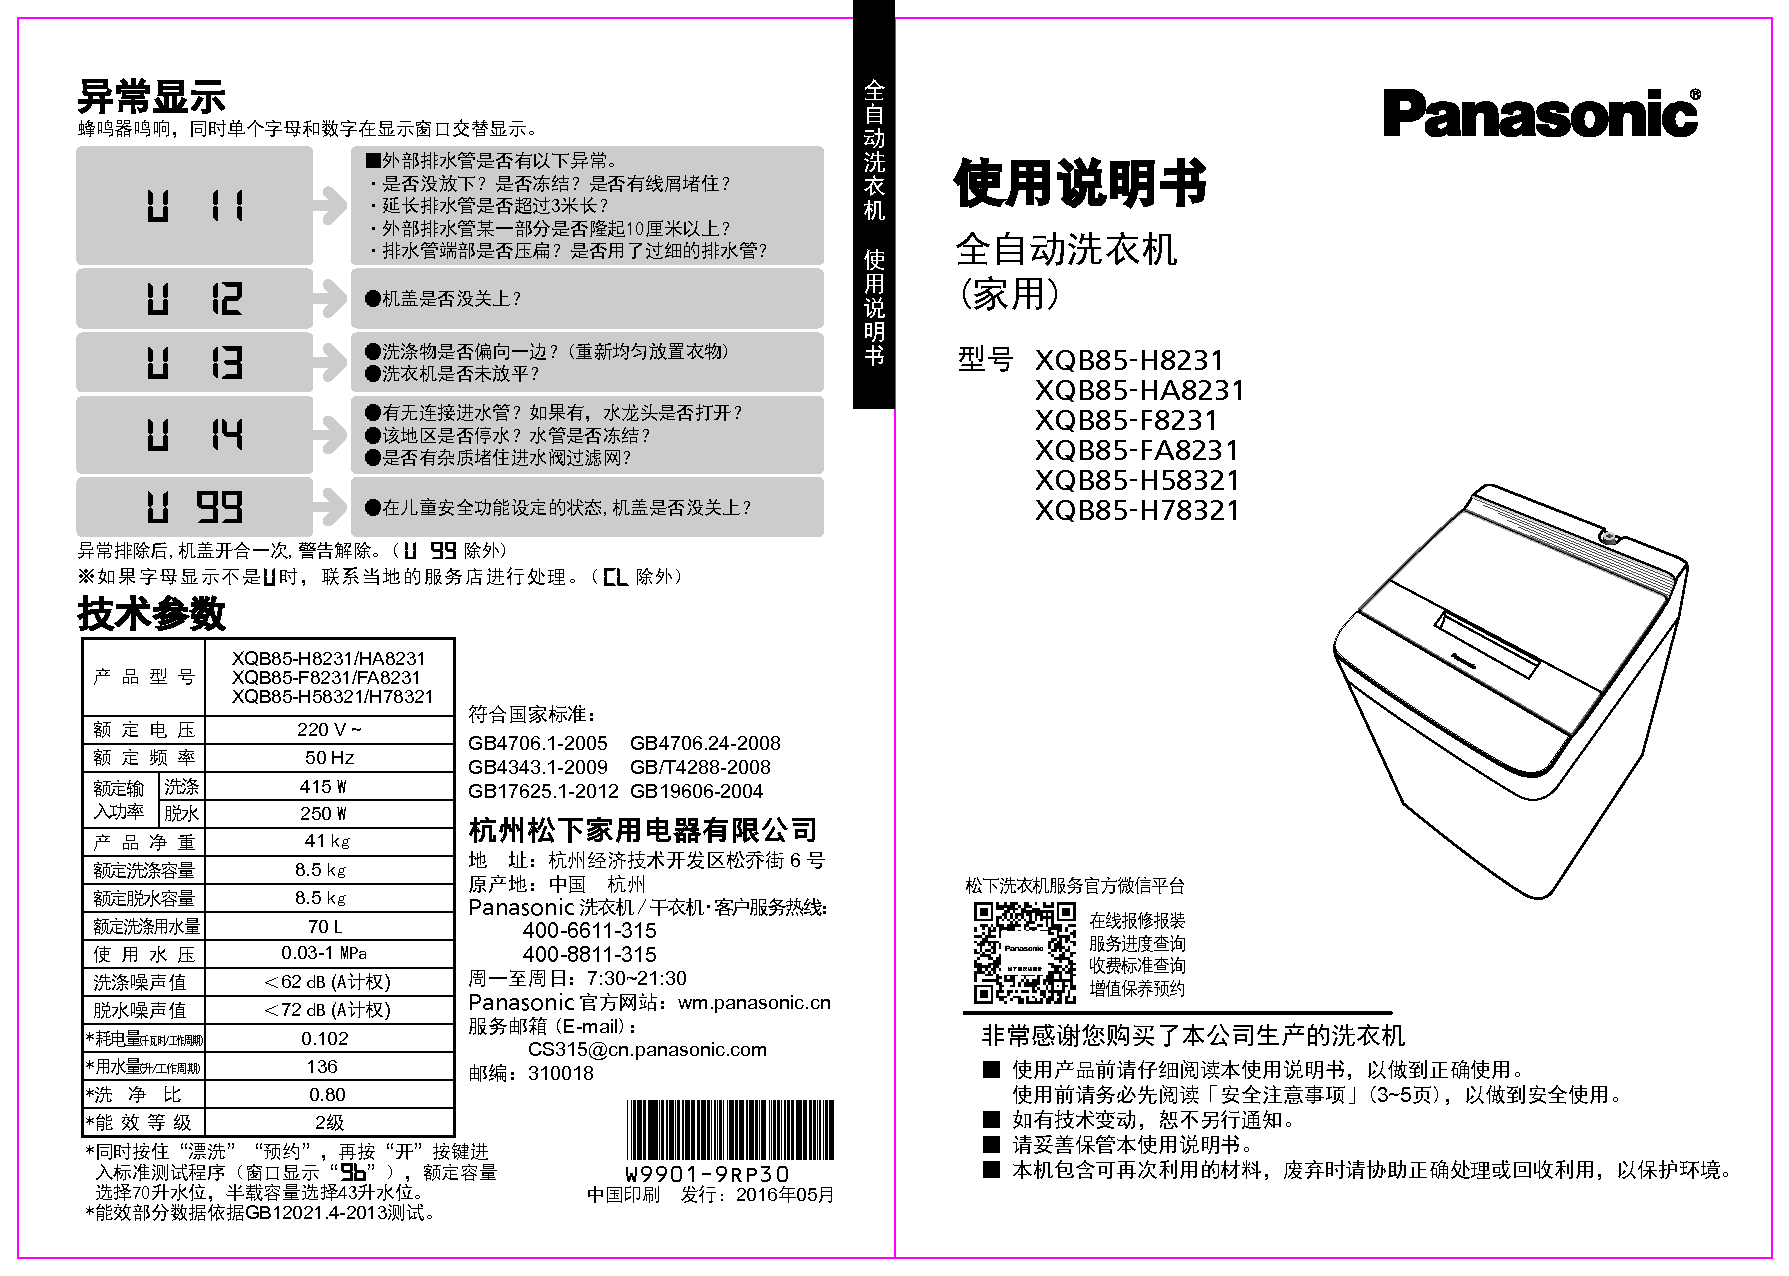 松下 Panasonic XQB85-F8231 使用说明书 封面